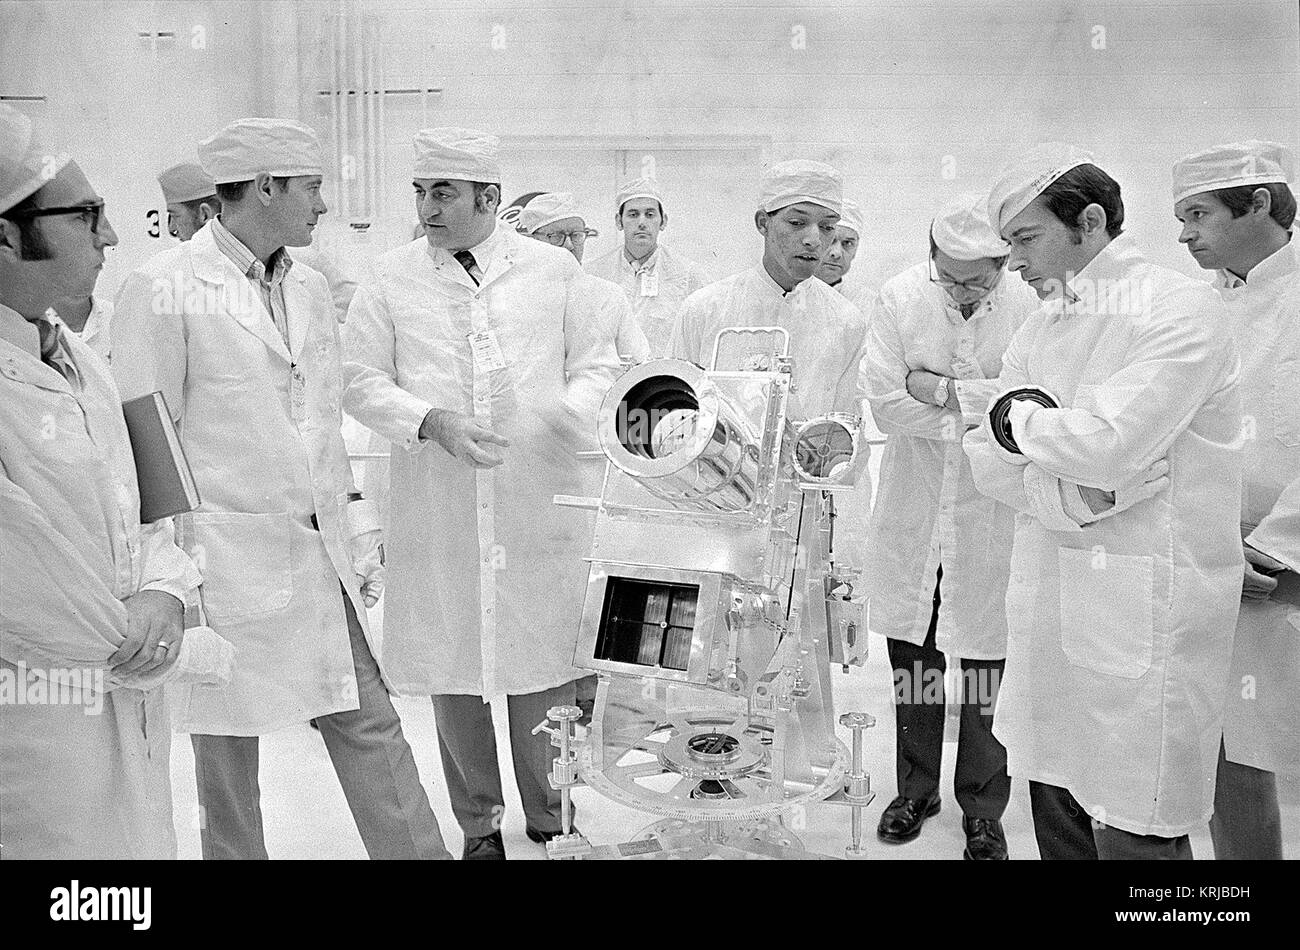 George Carruthers, Centre, principal chercheur de la surface lunaire Caméra Ultraviolet, parle de l'instrument à l'aide d'Apollo 16, John Young, commandant de la droite. Carruthers est employé par le Naval Research Lab à Washington, D.C., du pilote du module lunaire gauche sont Charles Duc et Rocco Petrone, directeur du programme Apollo. Cette photo a été prise au cours d'une surface lunaire Apollo dans l'examen des expériences du Manned Spacecraft Operations Building au Centre spatial Kennedy. La surface lunaire Caméra Ultraviolet (9460222206) Banque D'Images